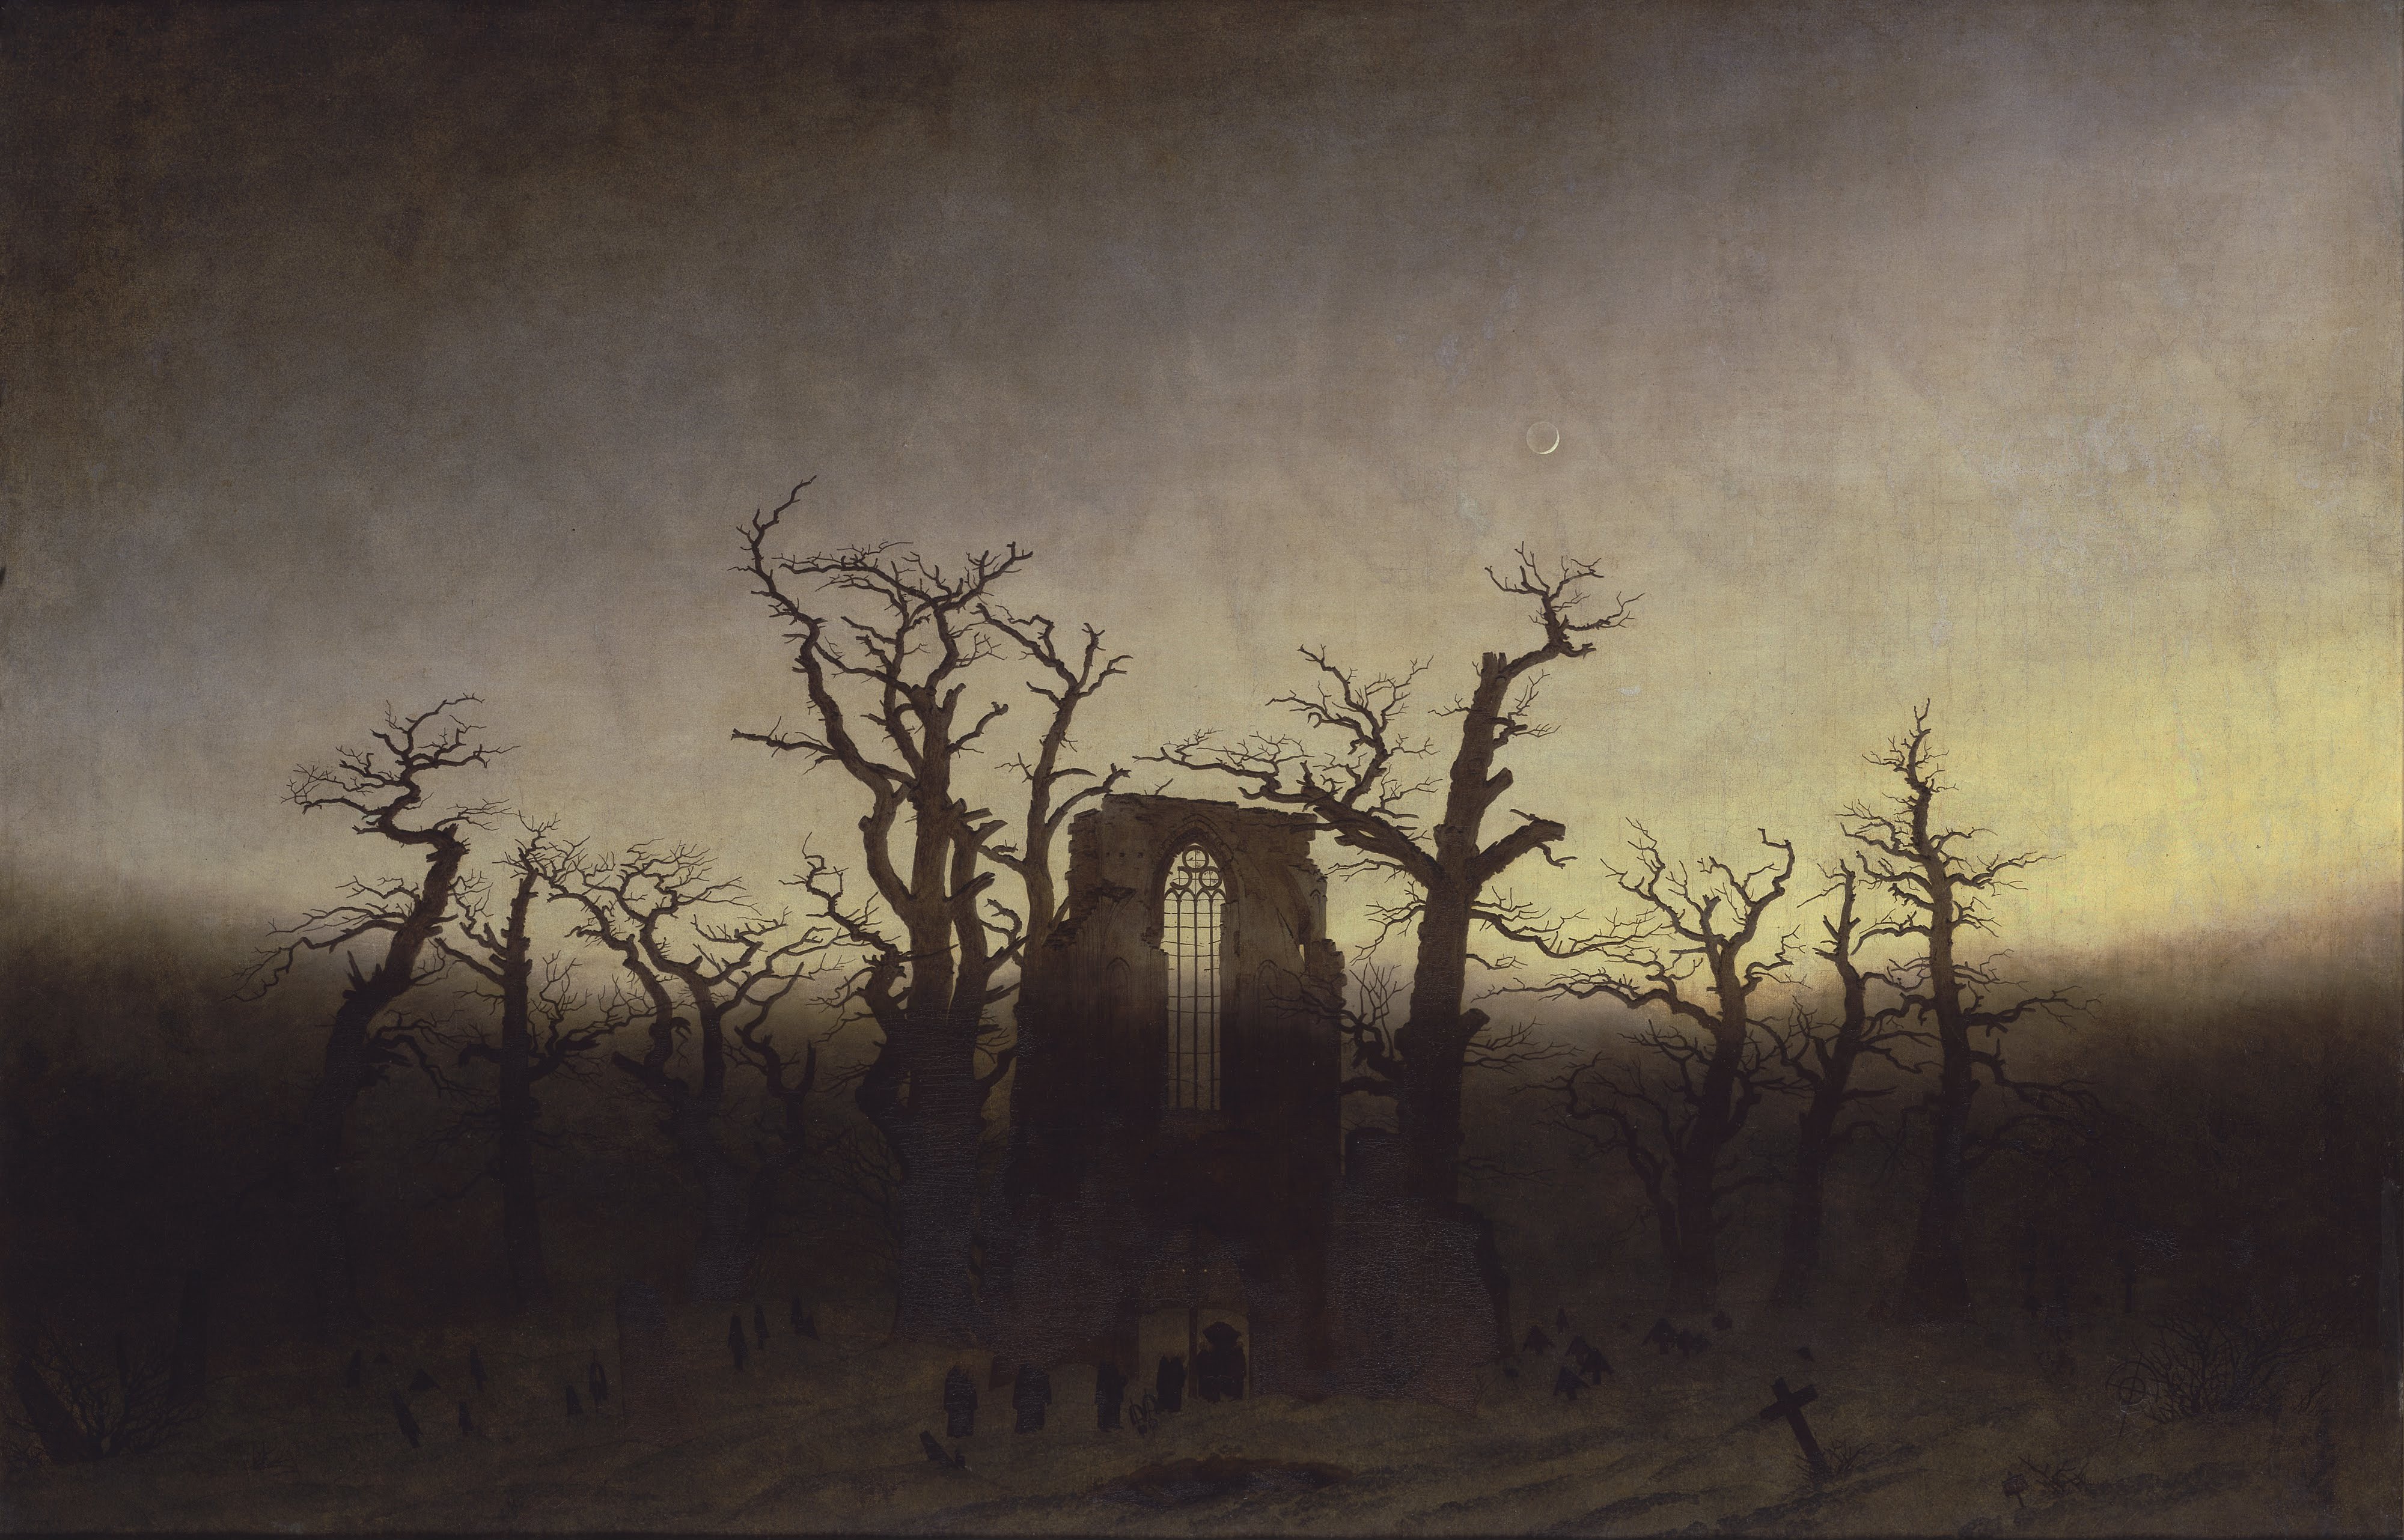 Painting Landscape Gothic Caspar David Friedrich Hd Wallpapers Desktop And Mobile Images Photos